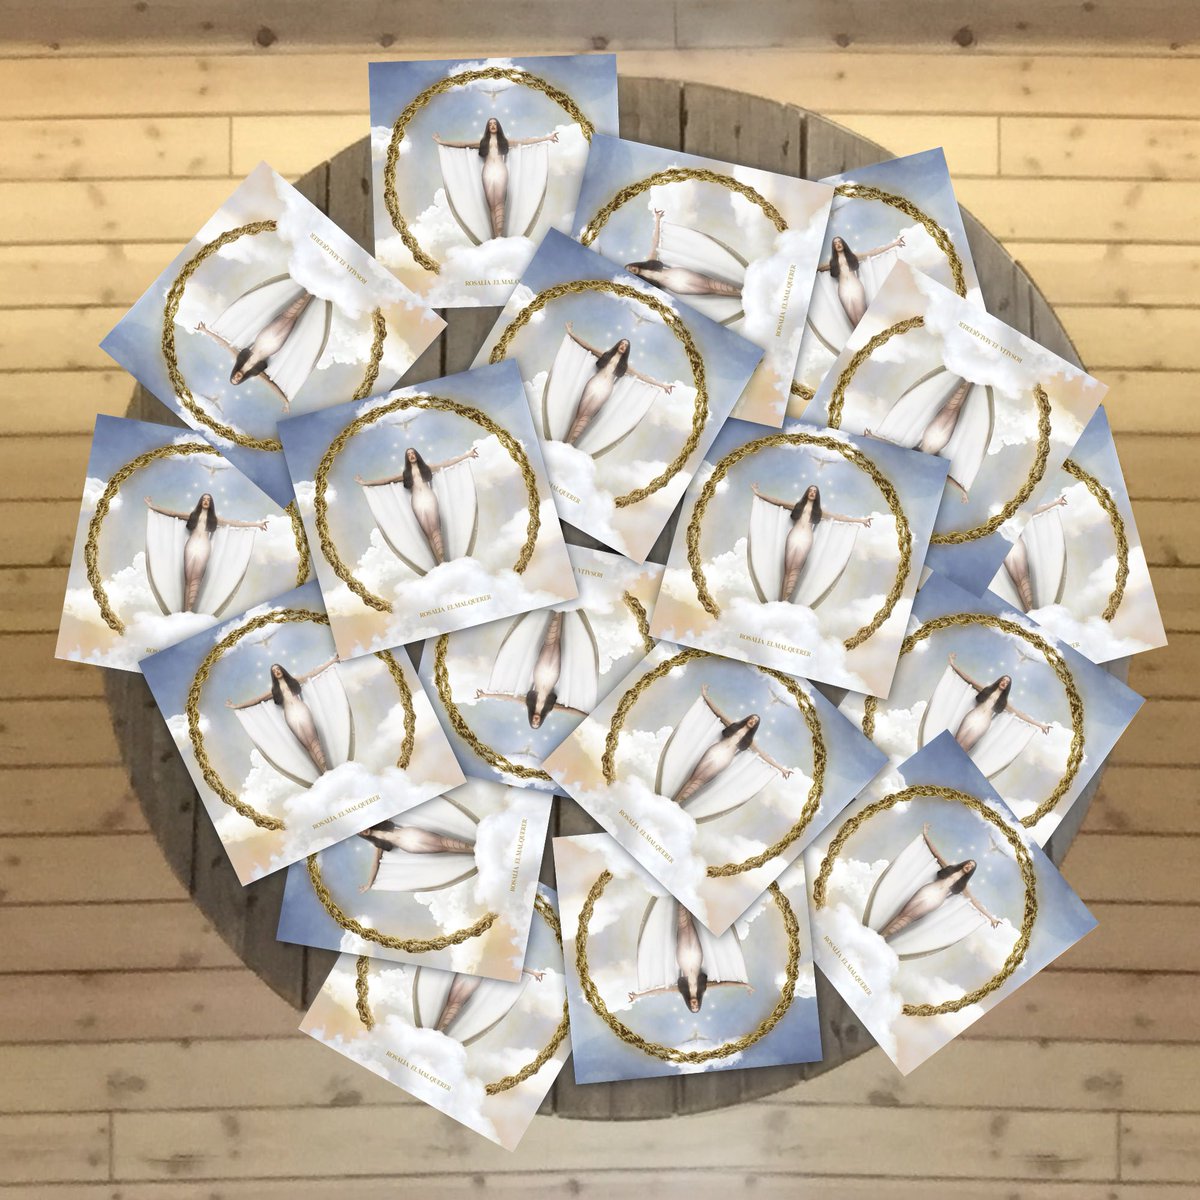 Discos Marcapasos on X: ¡Ojo con esos diamantes que brillan en nuestras  estanterías! ¡Ojo, que volvemos a tener El Mal Querer de ROSALÍA en VINILO!   #ElMalQuerer #DiscosMarcapasos #Duquesa6 #Granada  #Marcapasos